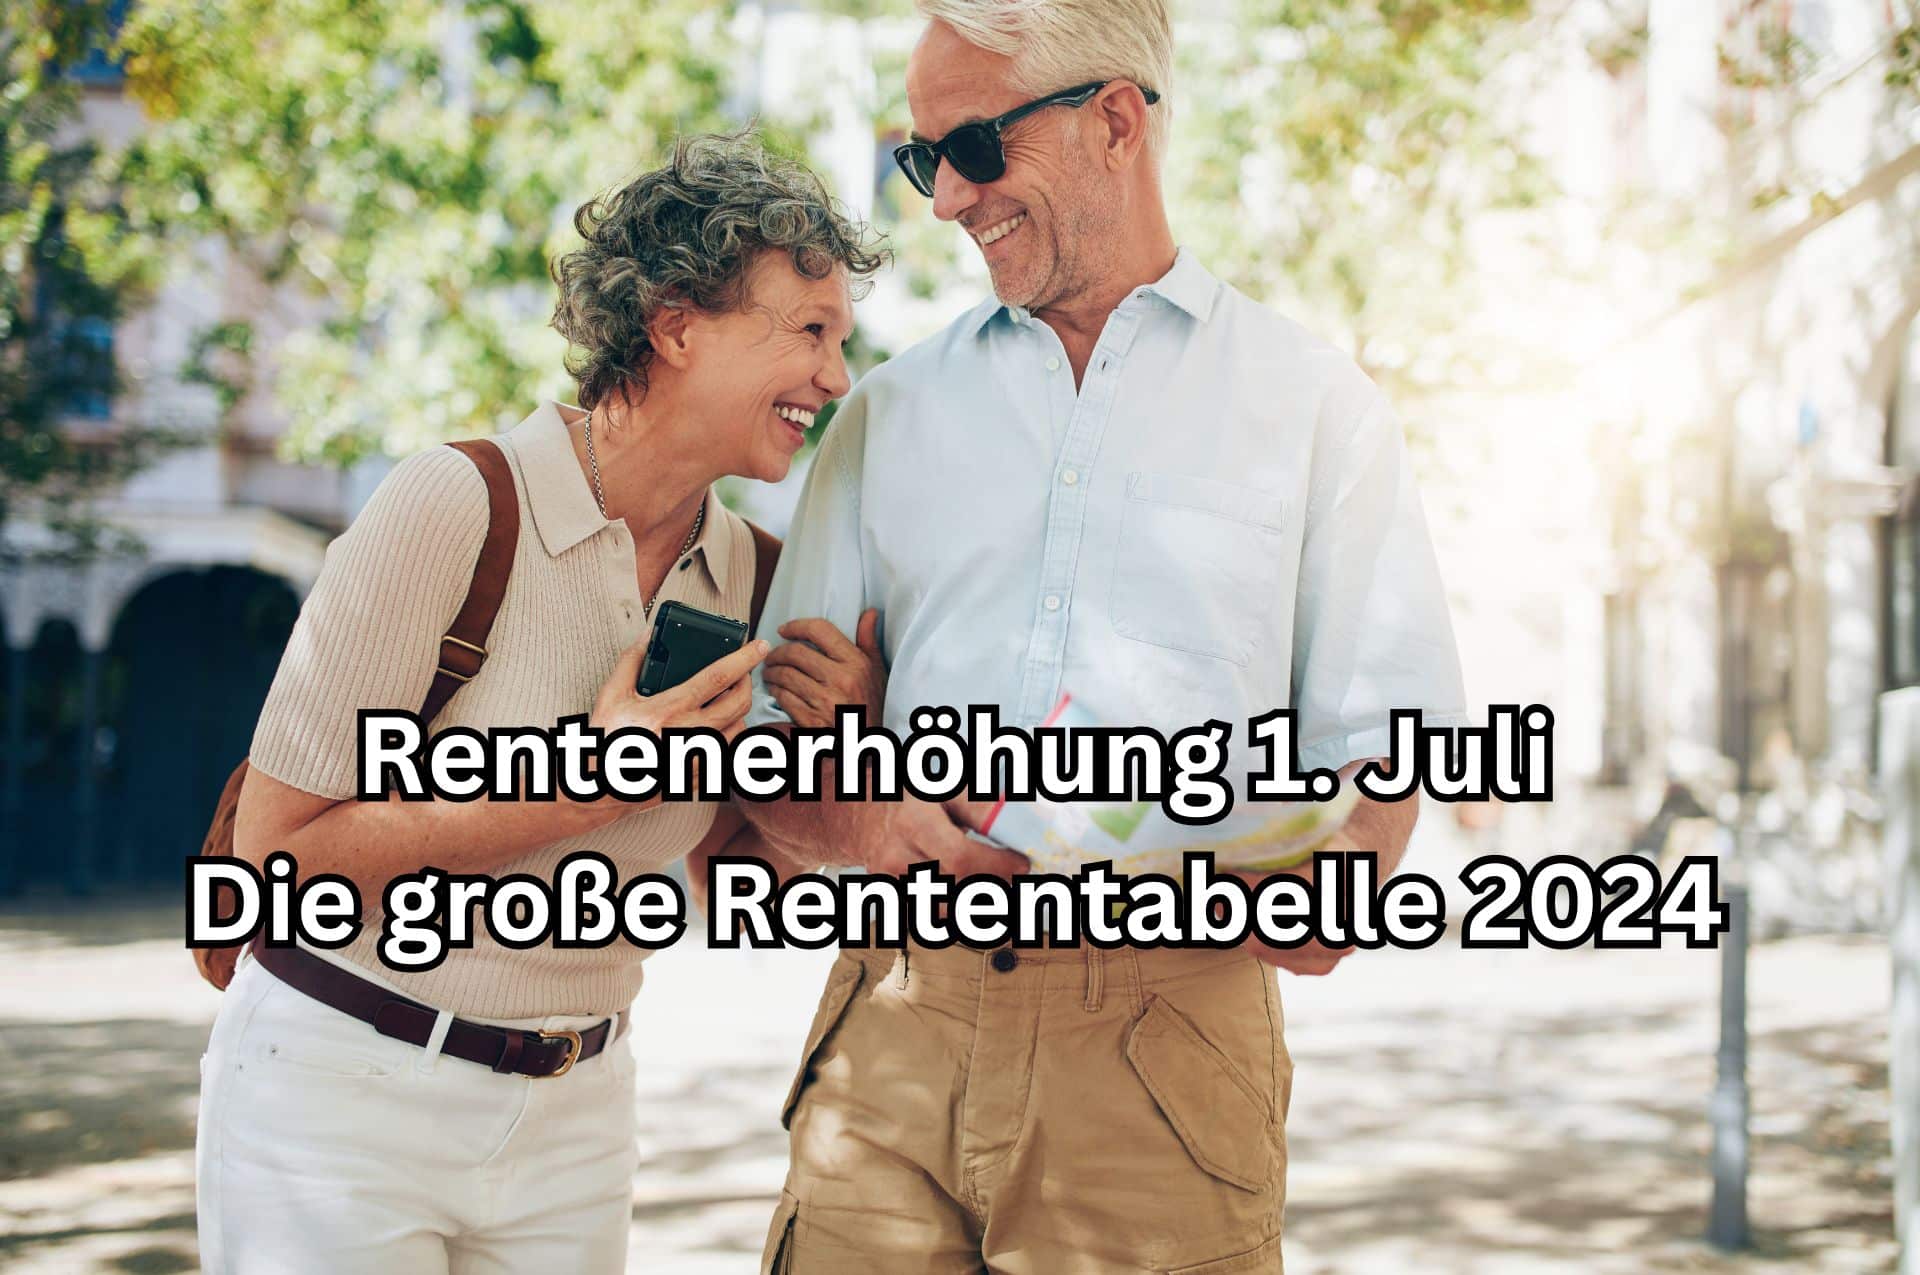 Die Rentenerhöhung zum 1. Juli 2024 in der großen Rententabelle.